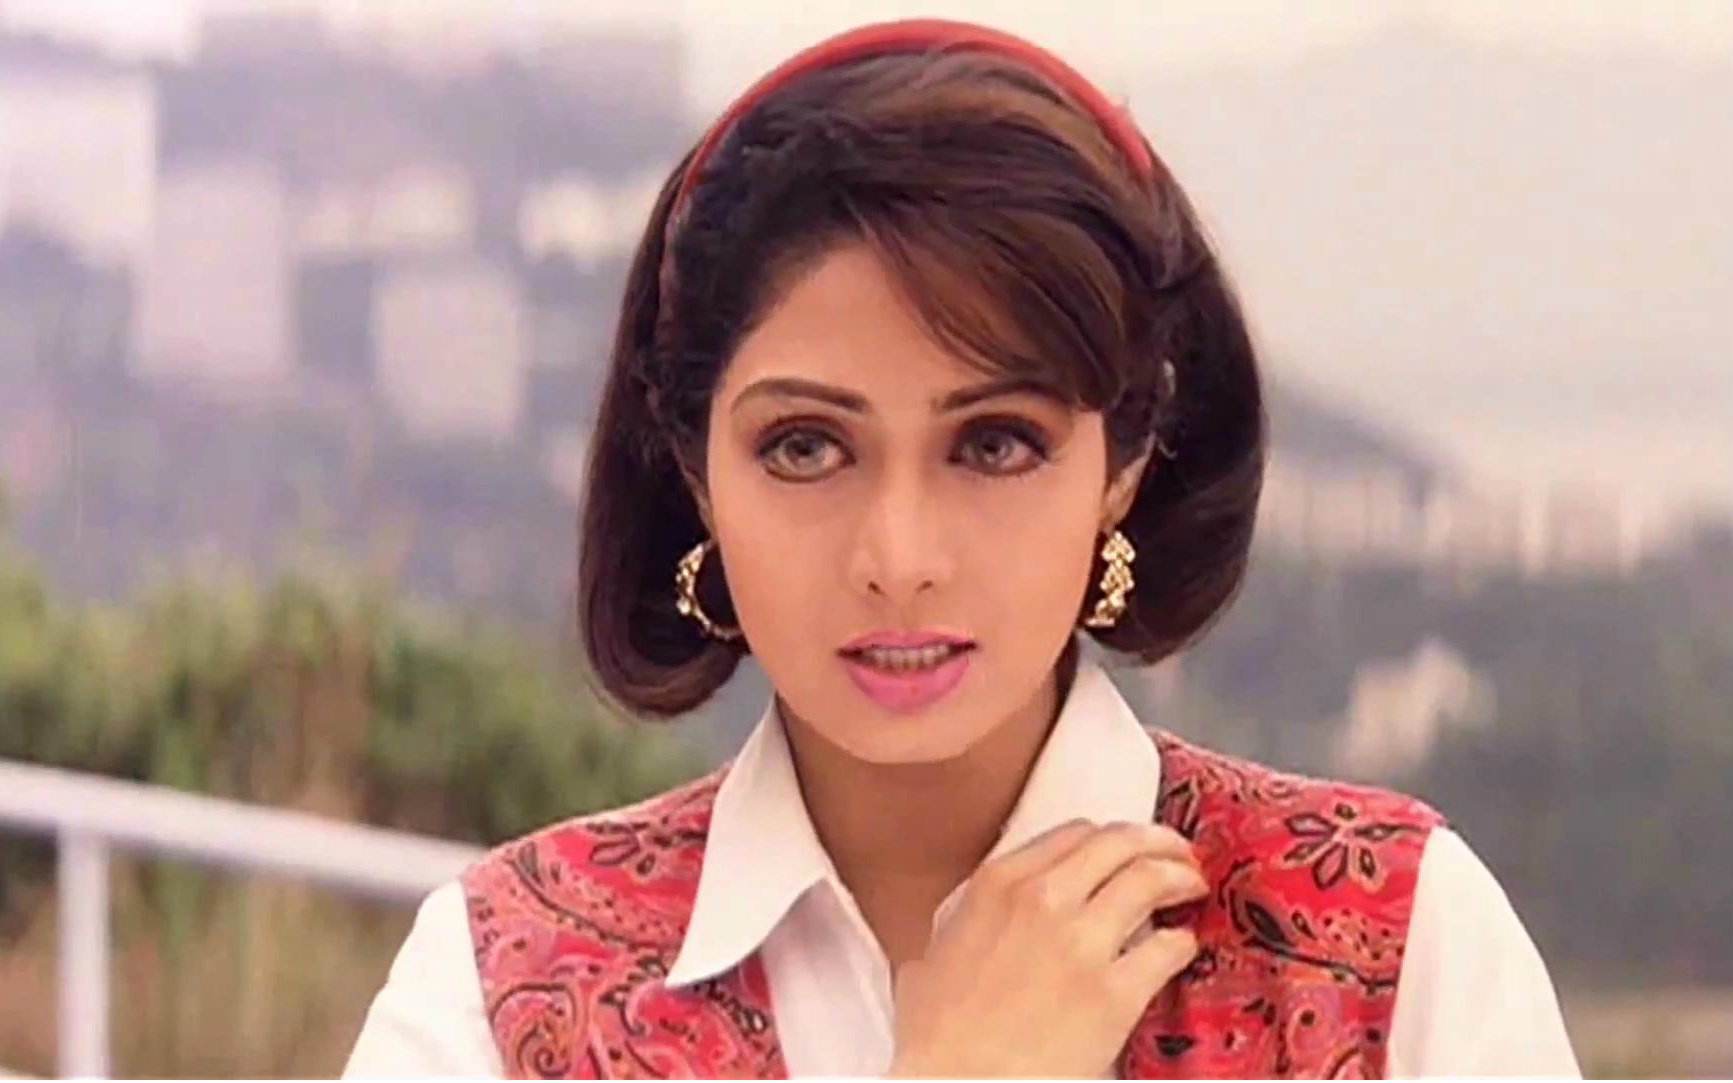 印度国宝级女星去世,演过236部宝莱坞电影,地位堪比阿米尔汗